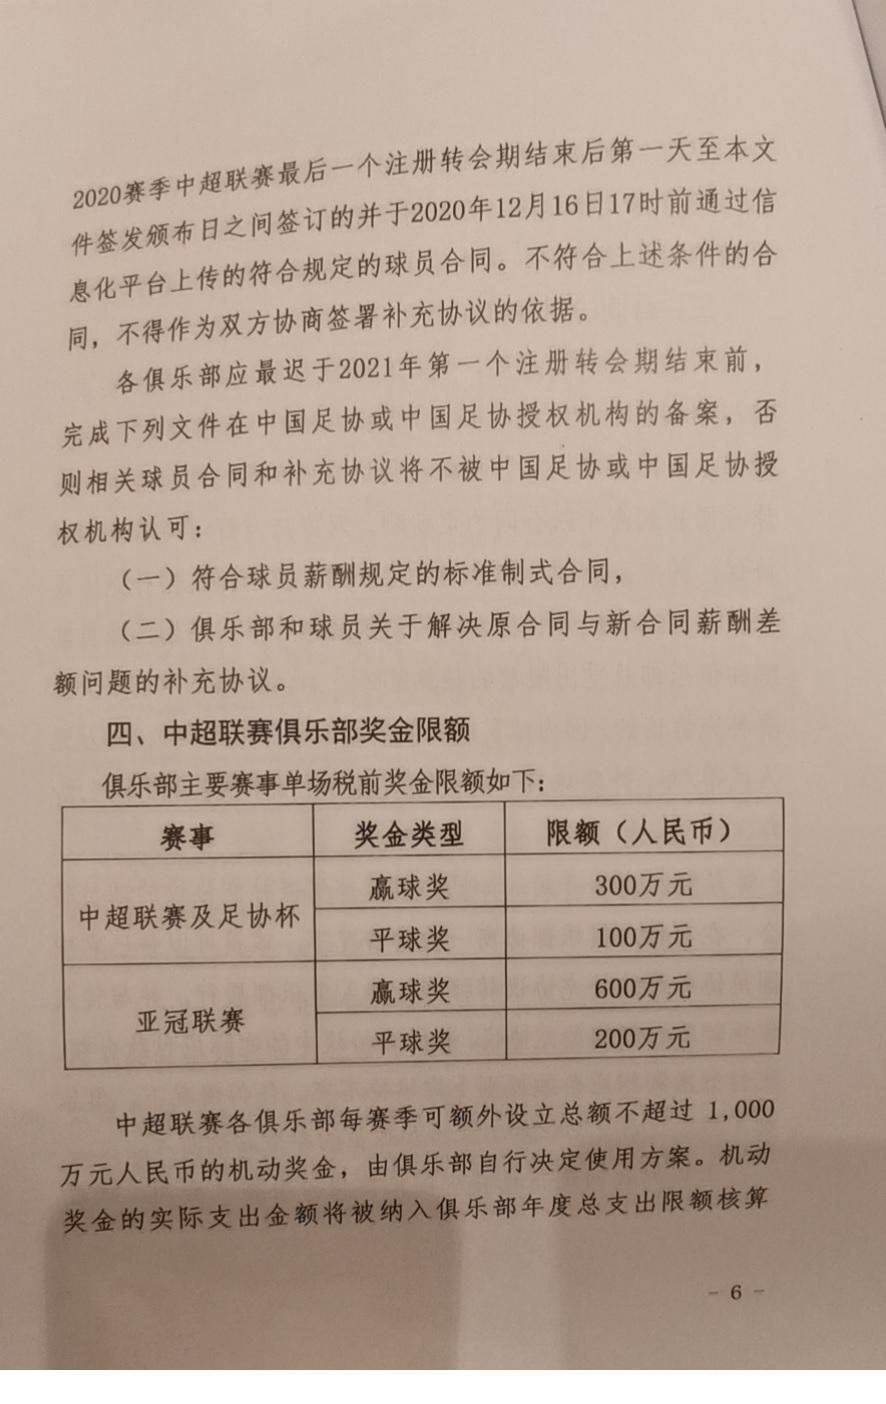 中国足球再次限薪: 中超国内球员年薪封顶500万元, 不含比赛奖金(7)